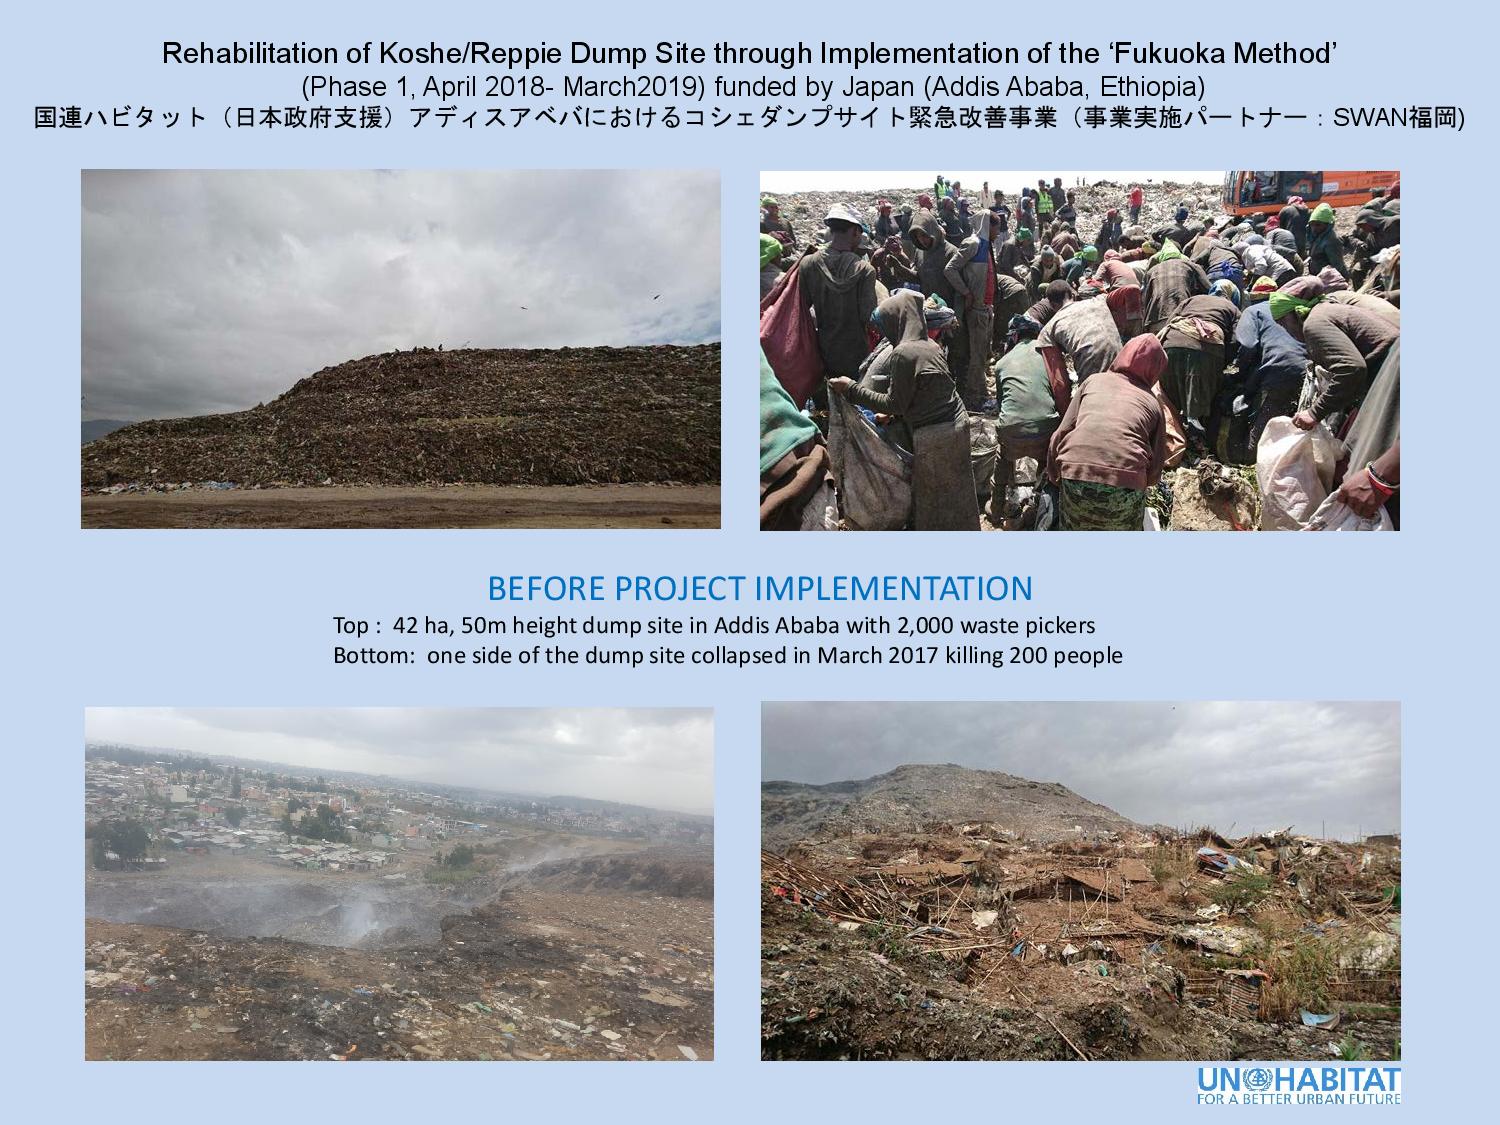 エチオピア・アディスアベバ市におけるコシェダンプサイト緊急改善事業（日本政府支援）サマリー (PDF)